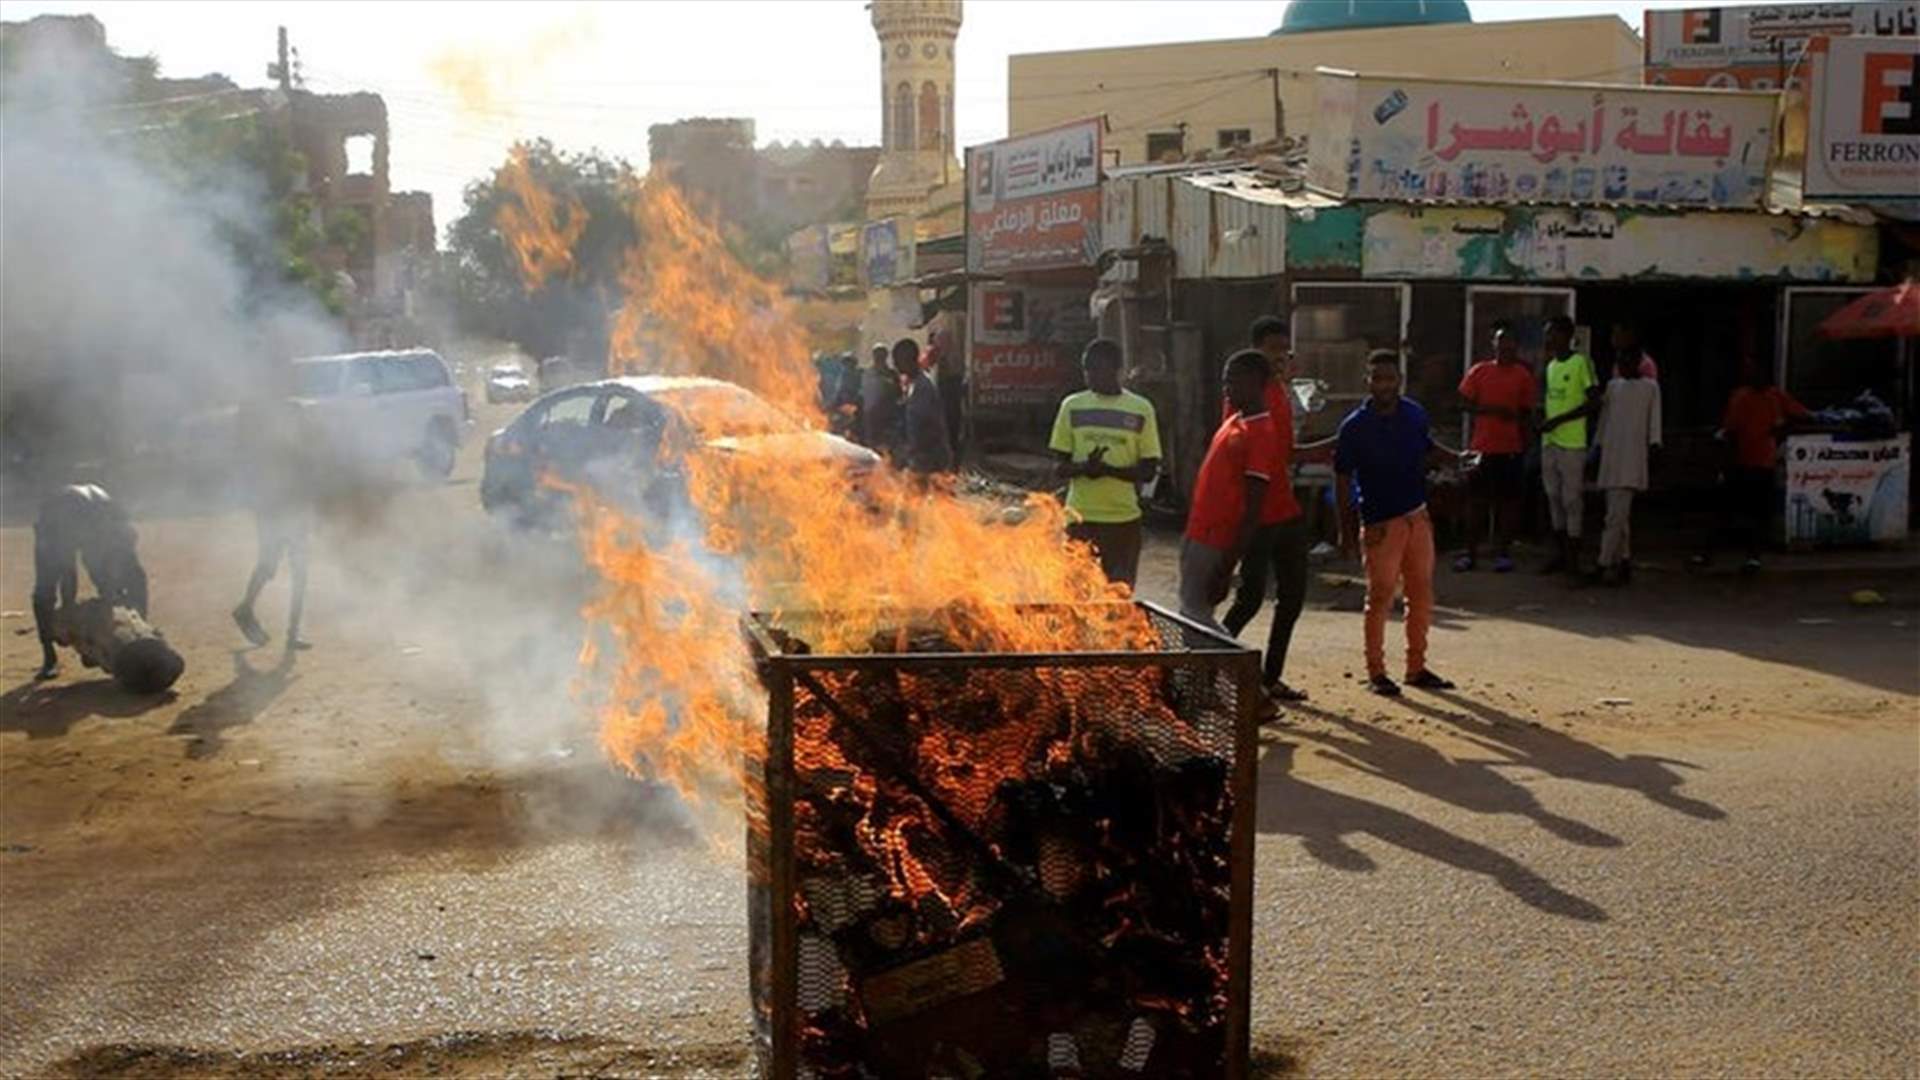 السودان يعلن حال الطوارئ في شرق البلاد جراء اشتباكات قبلية